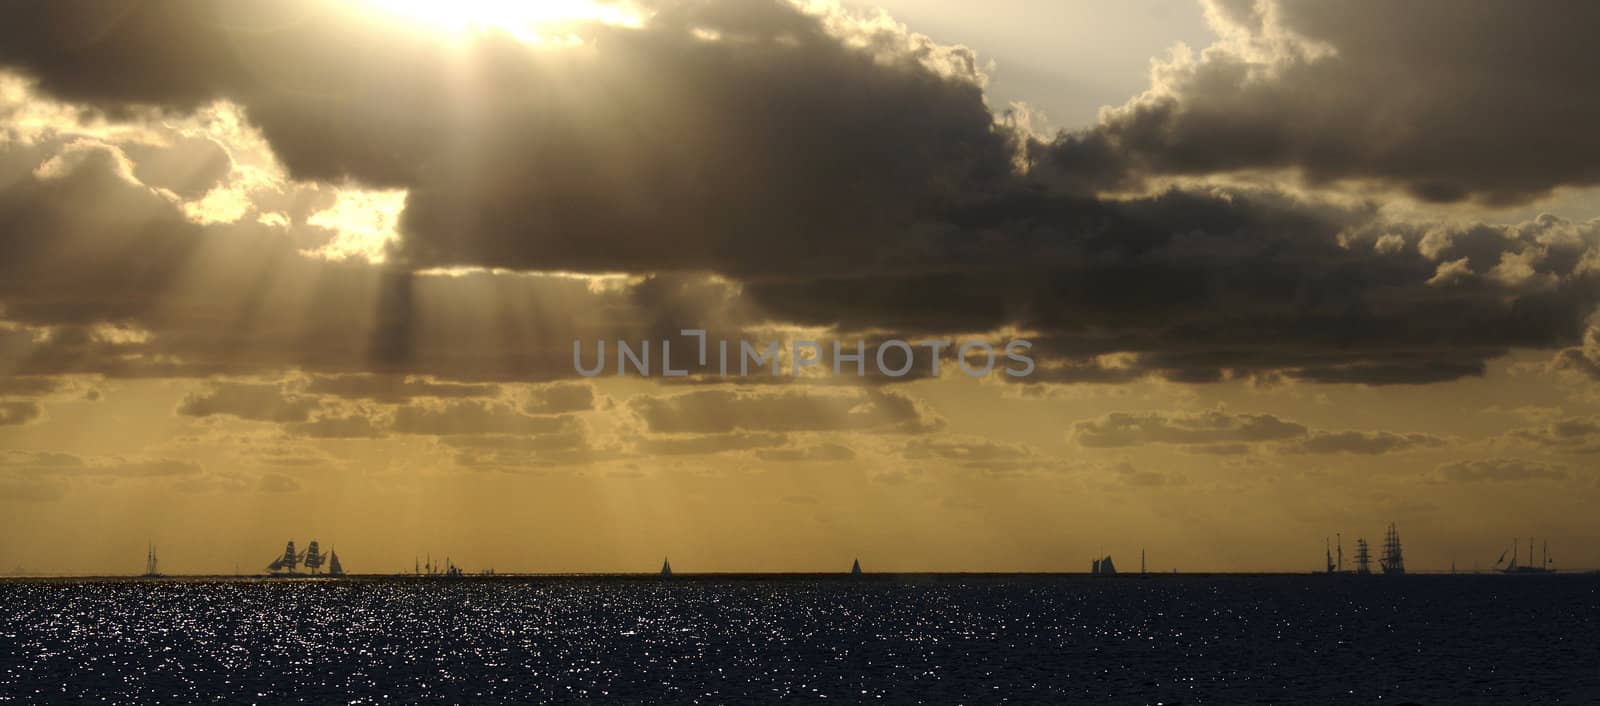 A Parade of sailing ships passes under the rising sun